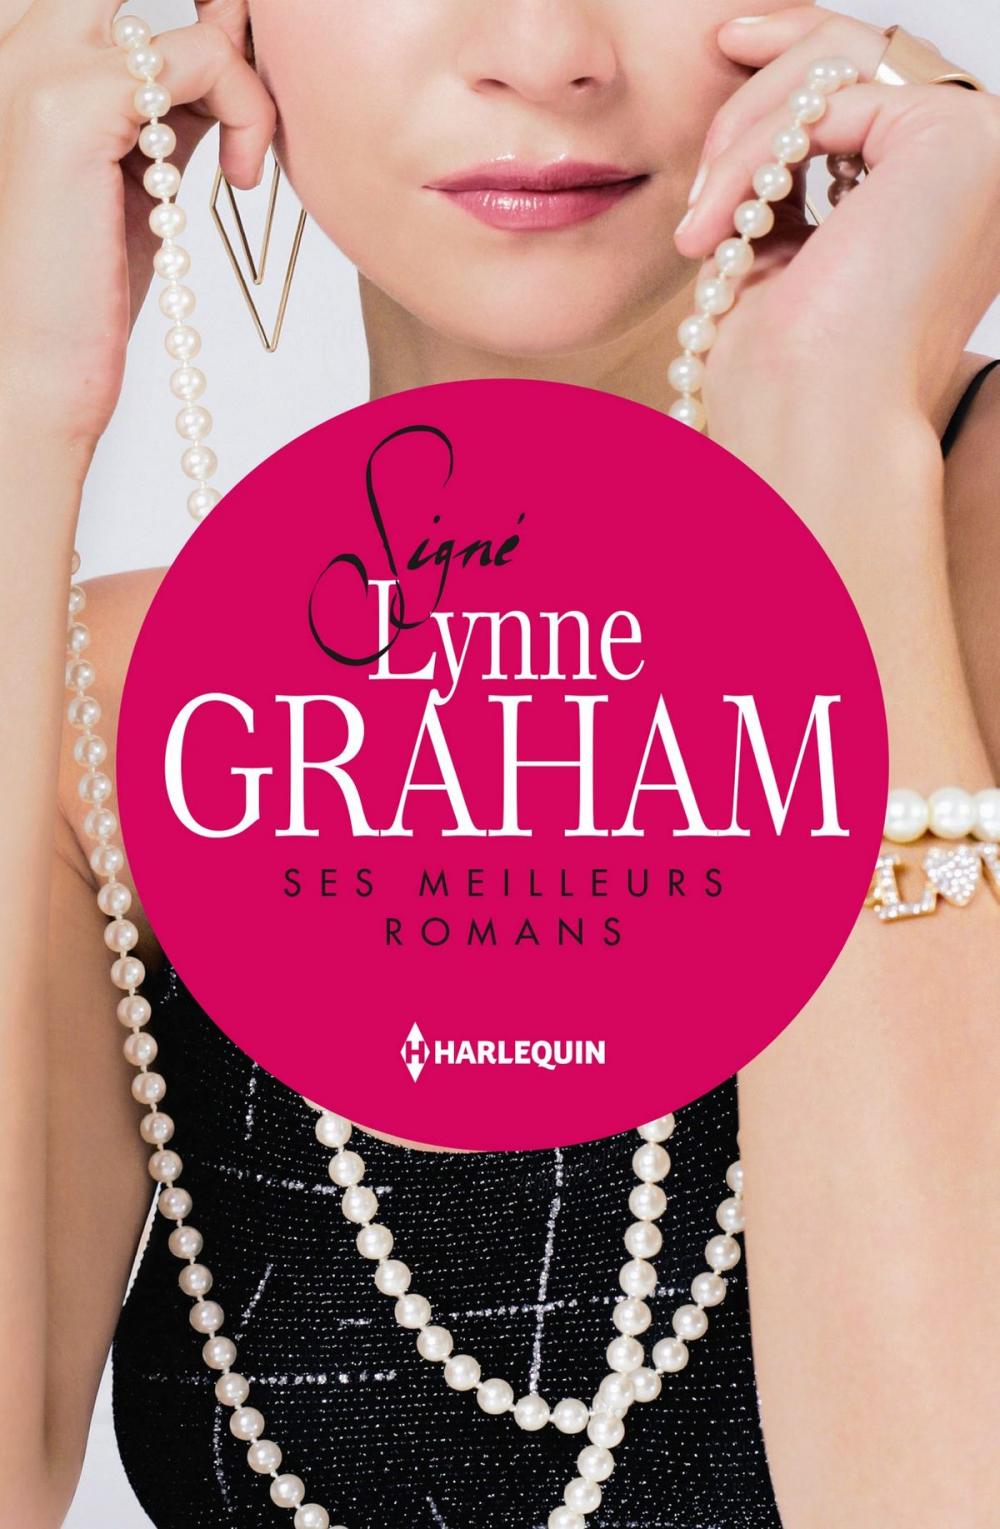 Big bigCover of Signé Lynne Graham : ses meilleurs romans